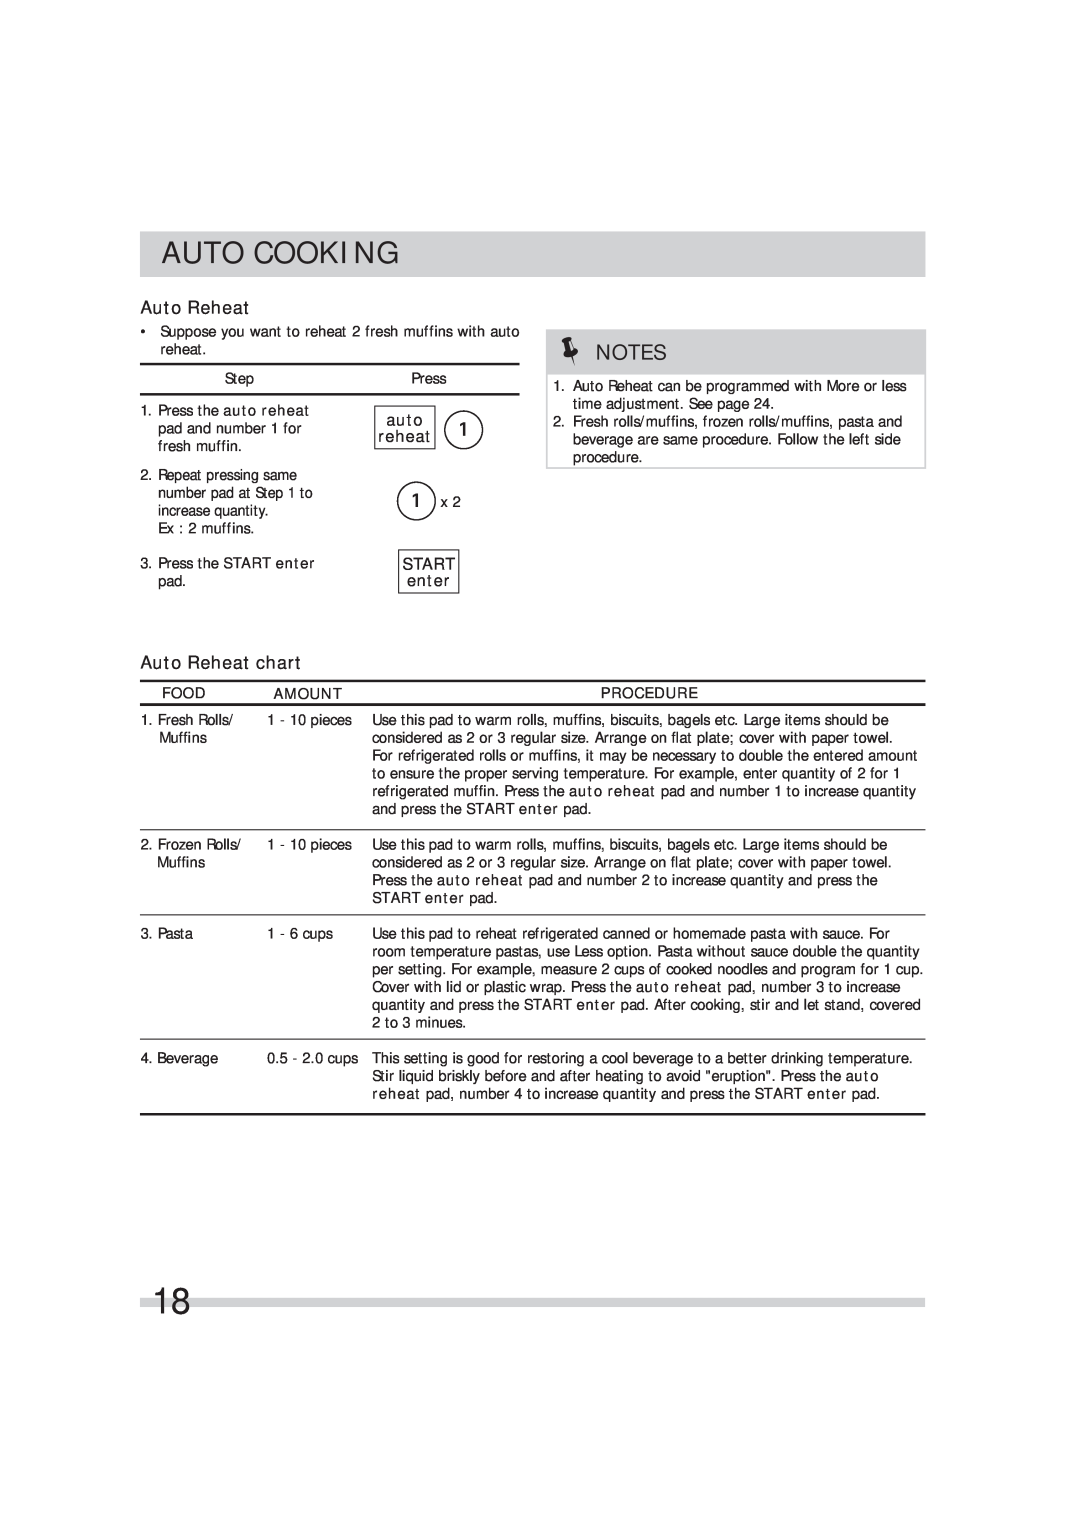 Frigidaire 316495054 Auto Reheat chart, auto reheat, START enter pad, Auto Cooking, Start, Food, Amount, Procedure 